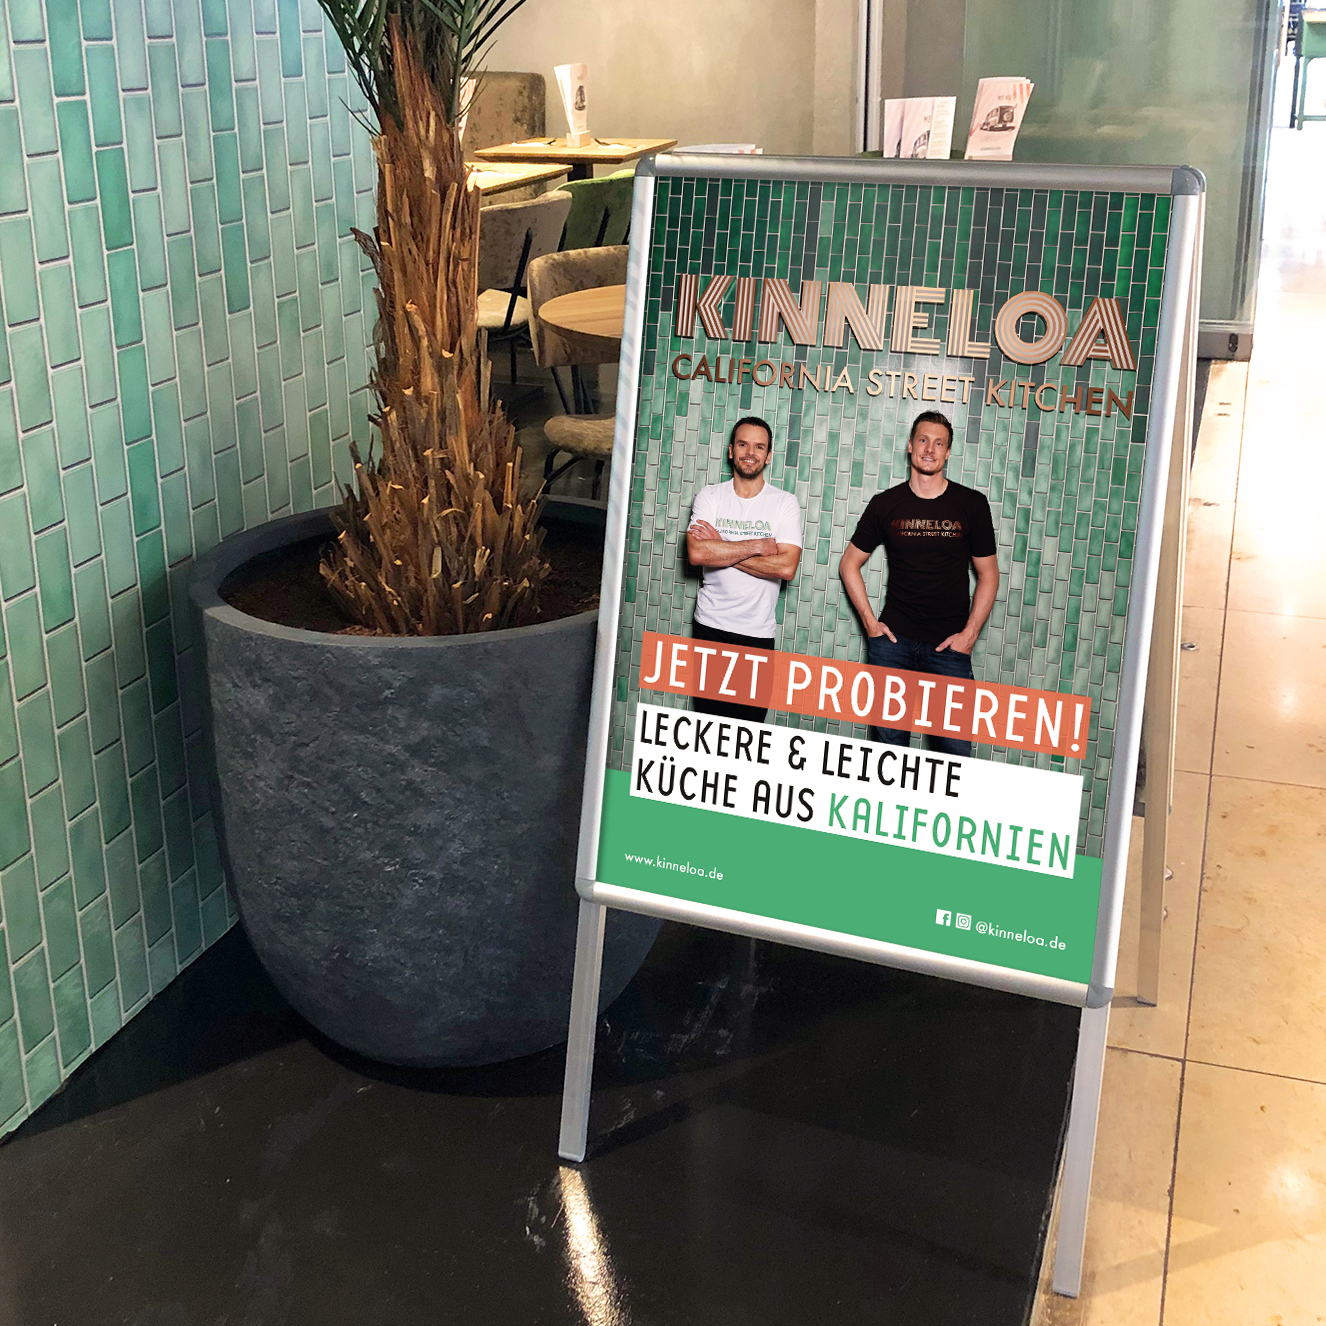 Kinneloa Plakat Stopper Eroeffnung